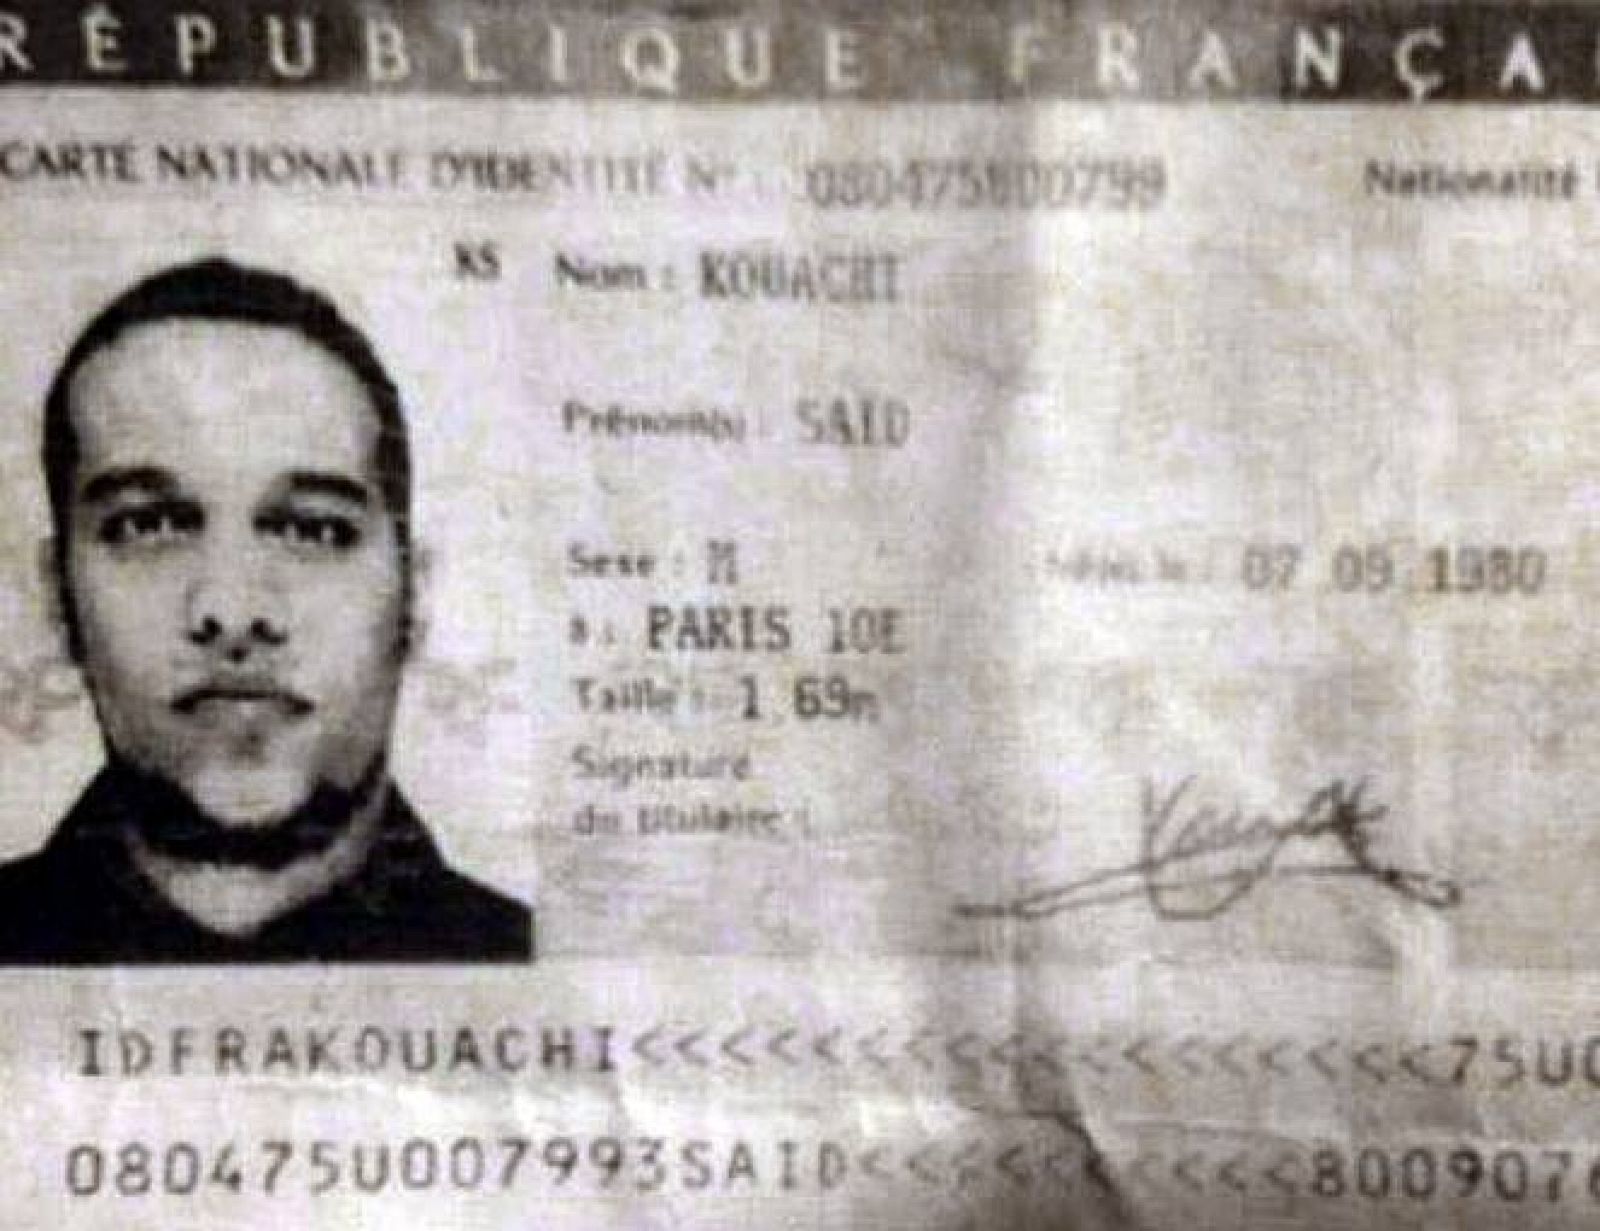 Imagen facilitada por la policía francesa a la agencia AFP en la que se muestra una reproducción de la identificación de Said Kouachi